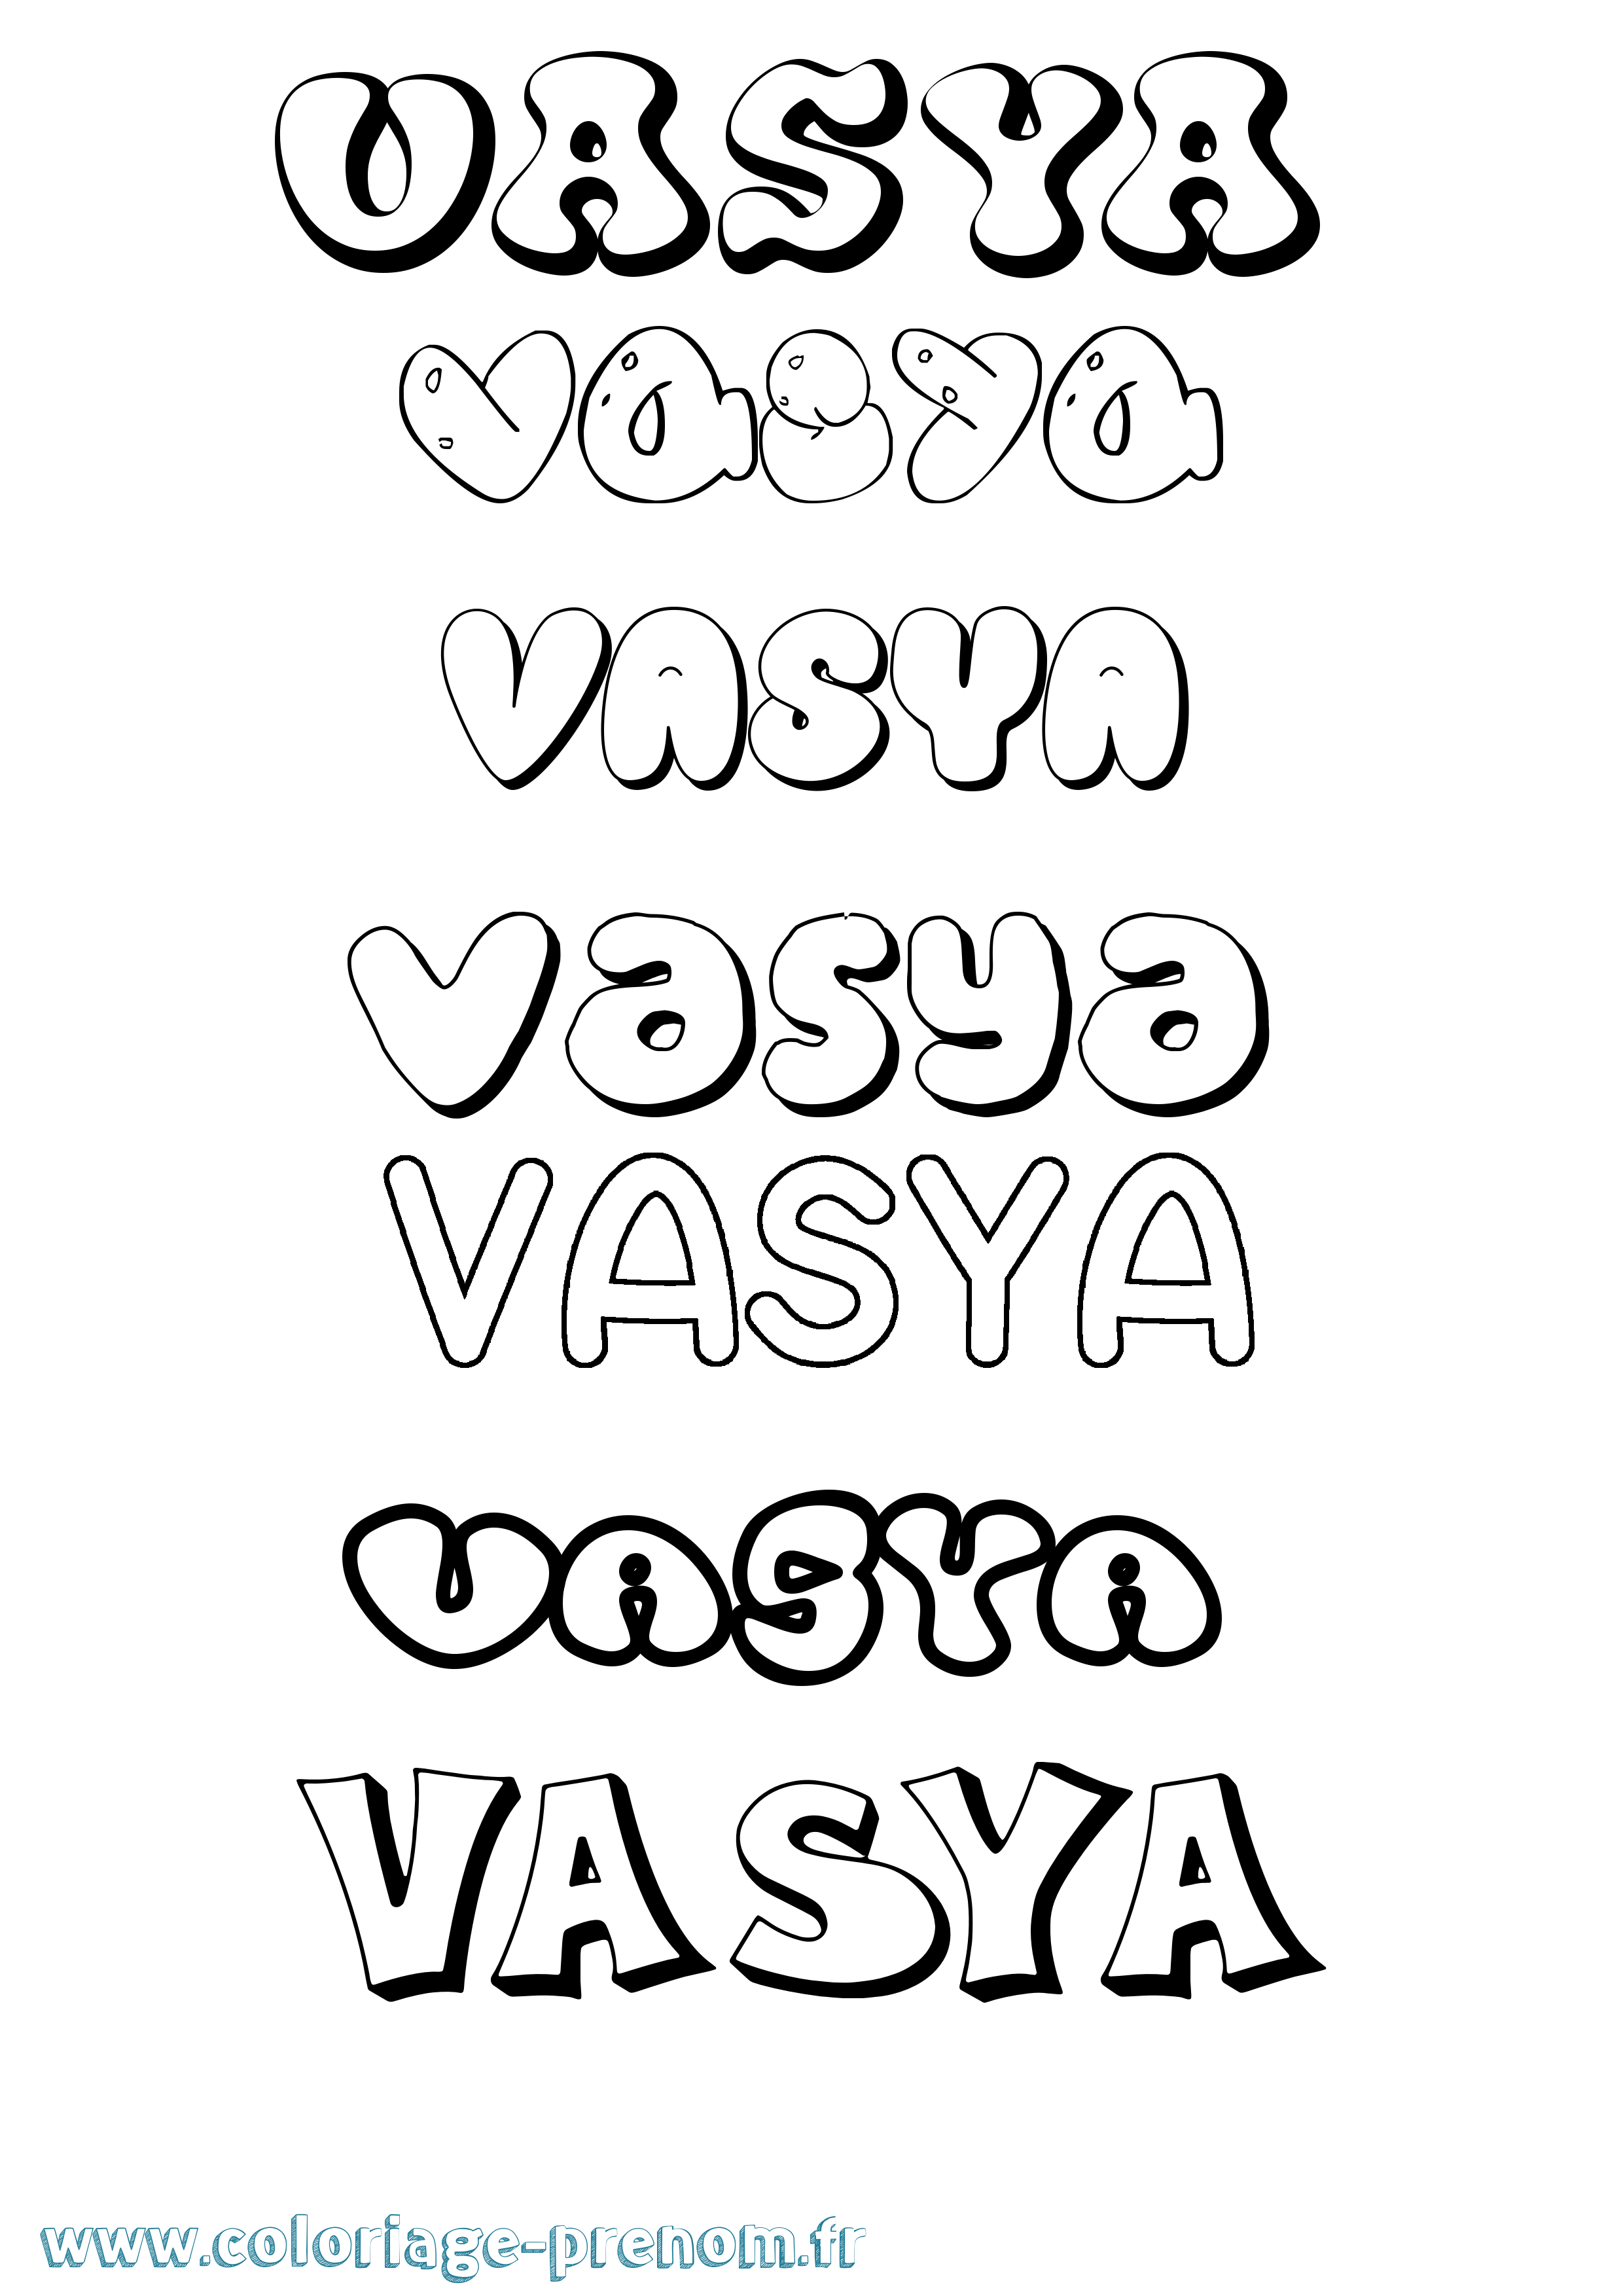 Coloriage prénom Vasya Bubble